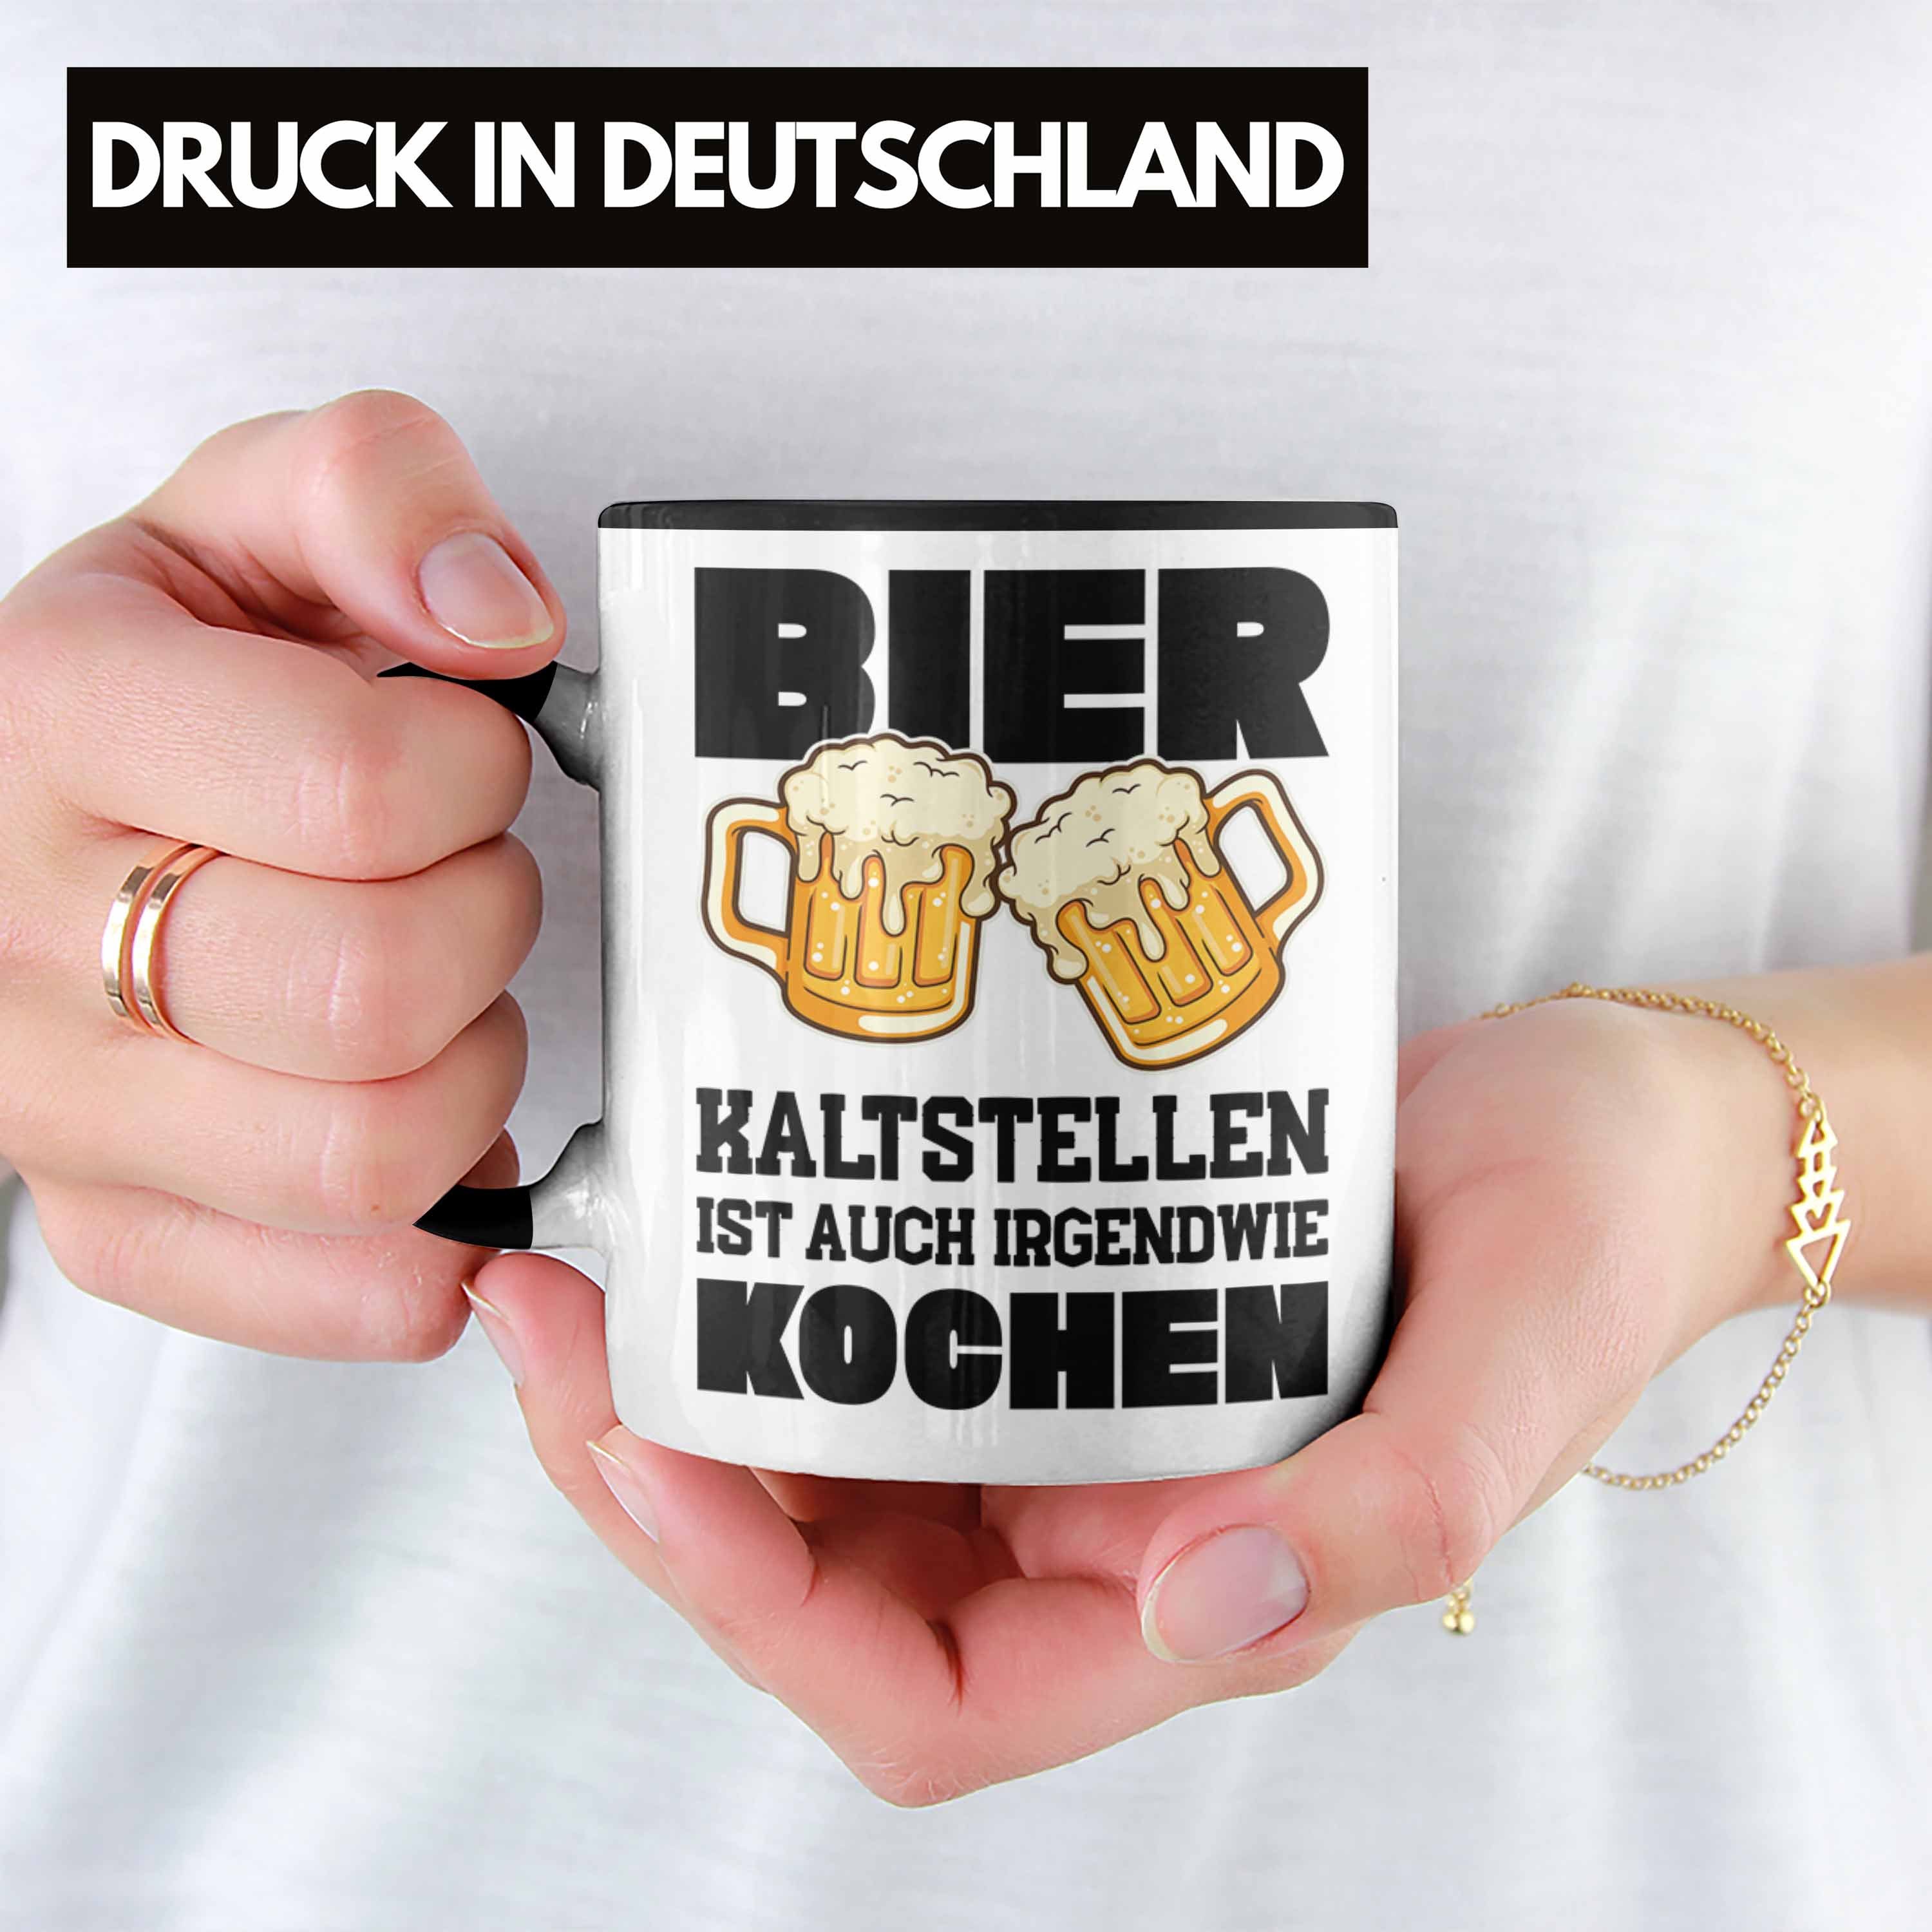 Männer Party Lustiger Vater Lustiger Tasse Tasse Trendation - Saufen Bier Spruch Schwarz Trendation Spruch